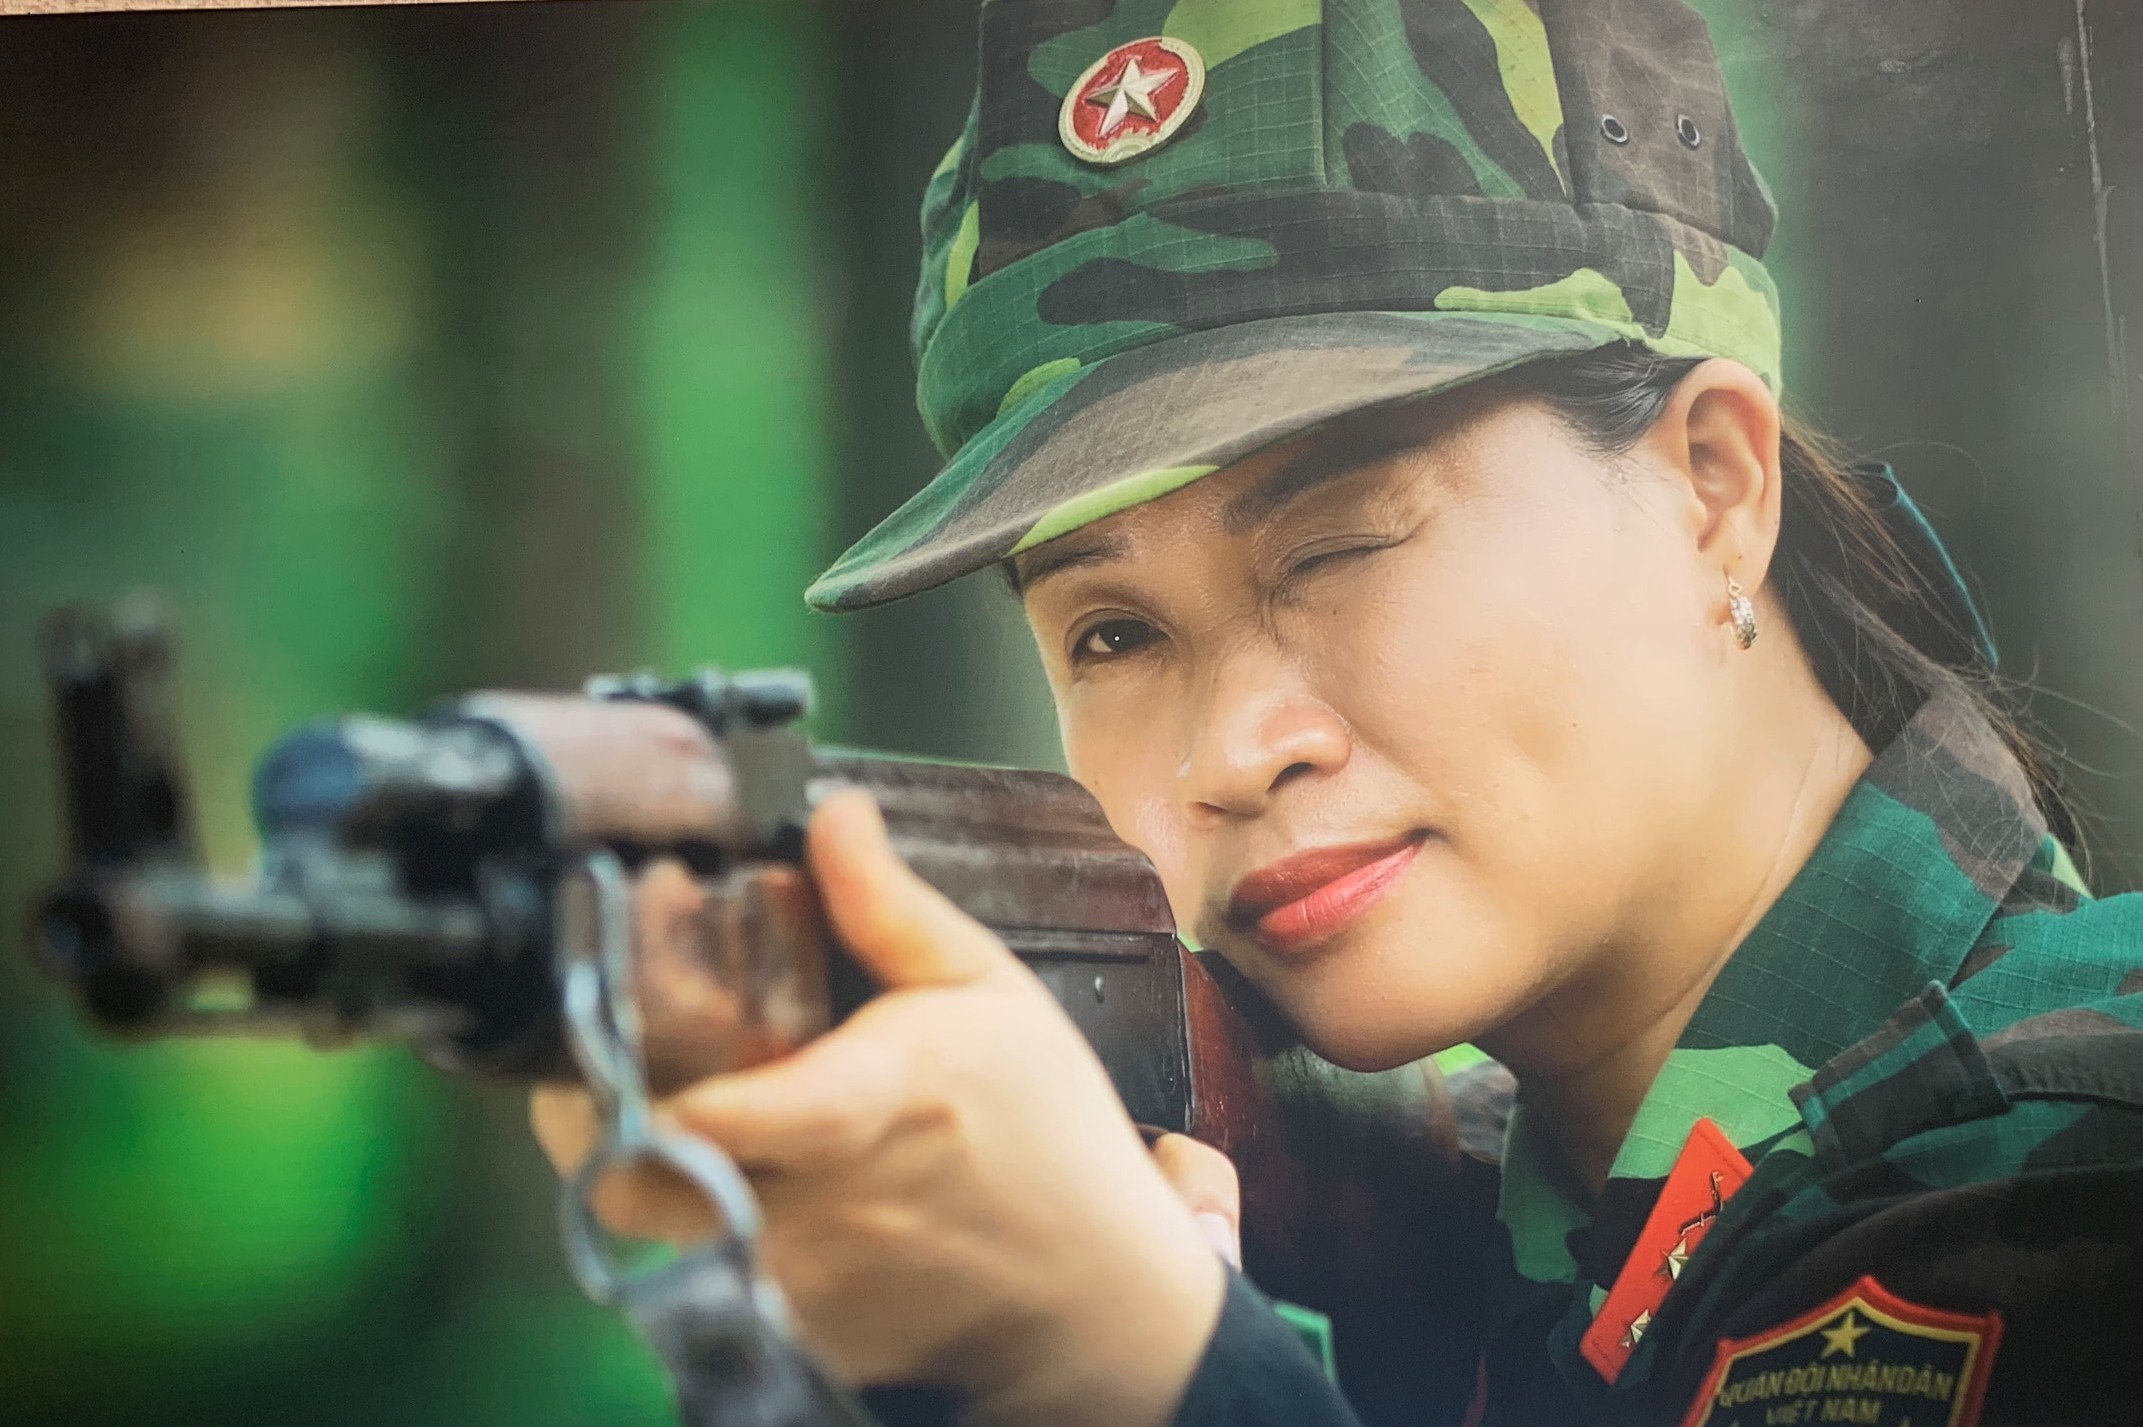 Hãy cùng ngắm nhìn hình ảnh của một người nữ quân nhân, chắc hẳn sẽ cảm nhận được lòng yêu nước và tinh thần kiên cường của những người phụ nữ trong quân ngũ.